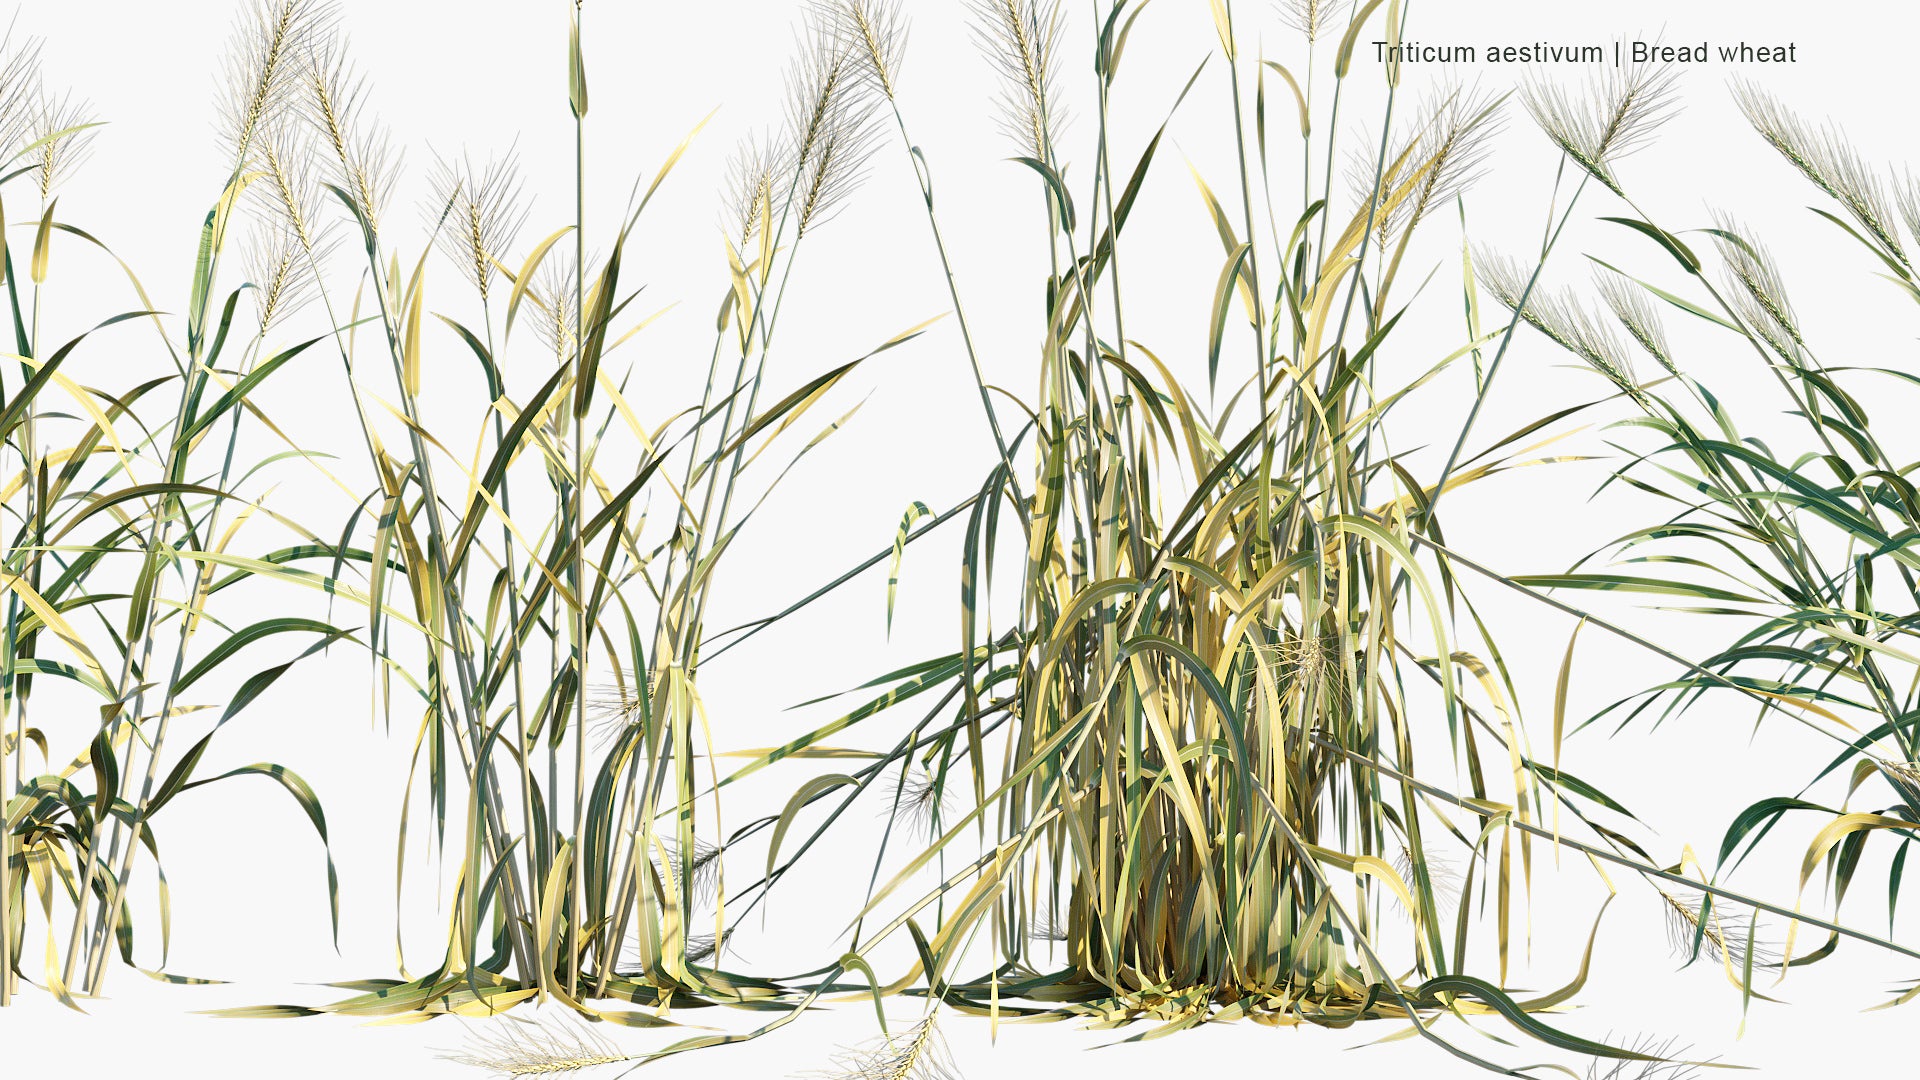 Triticum Aestivum - Common Wheat